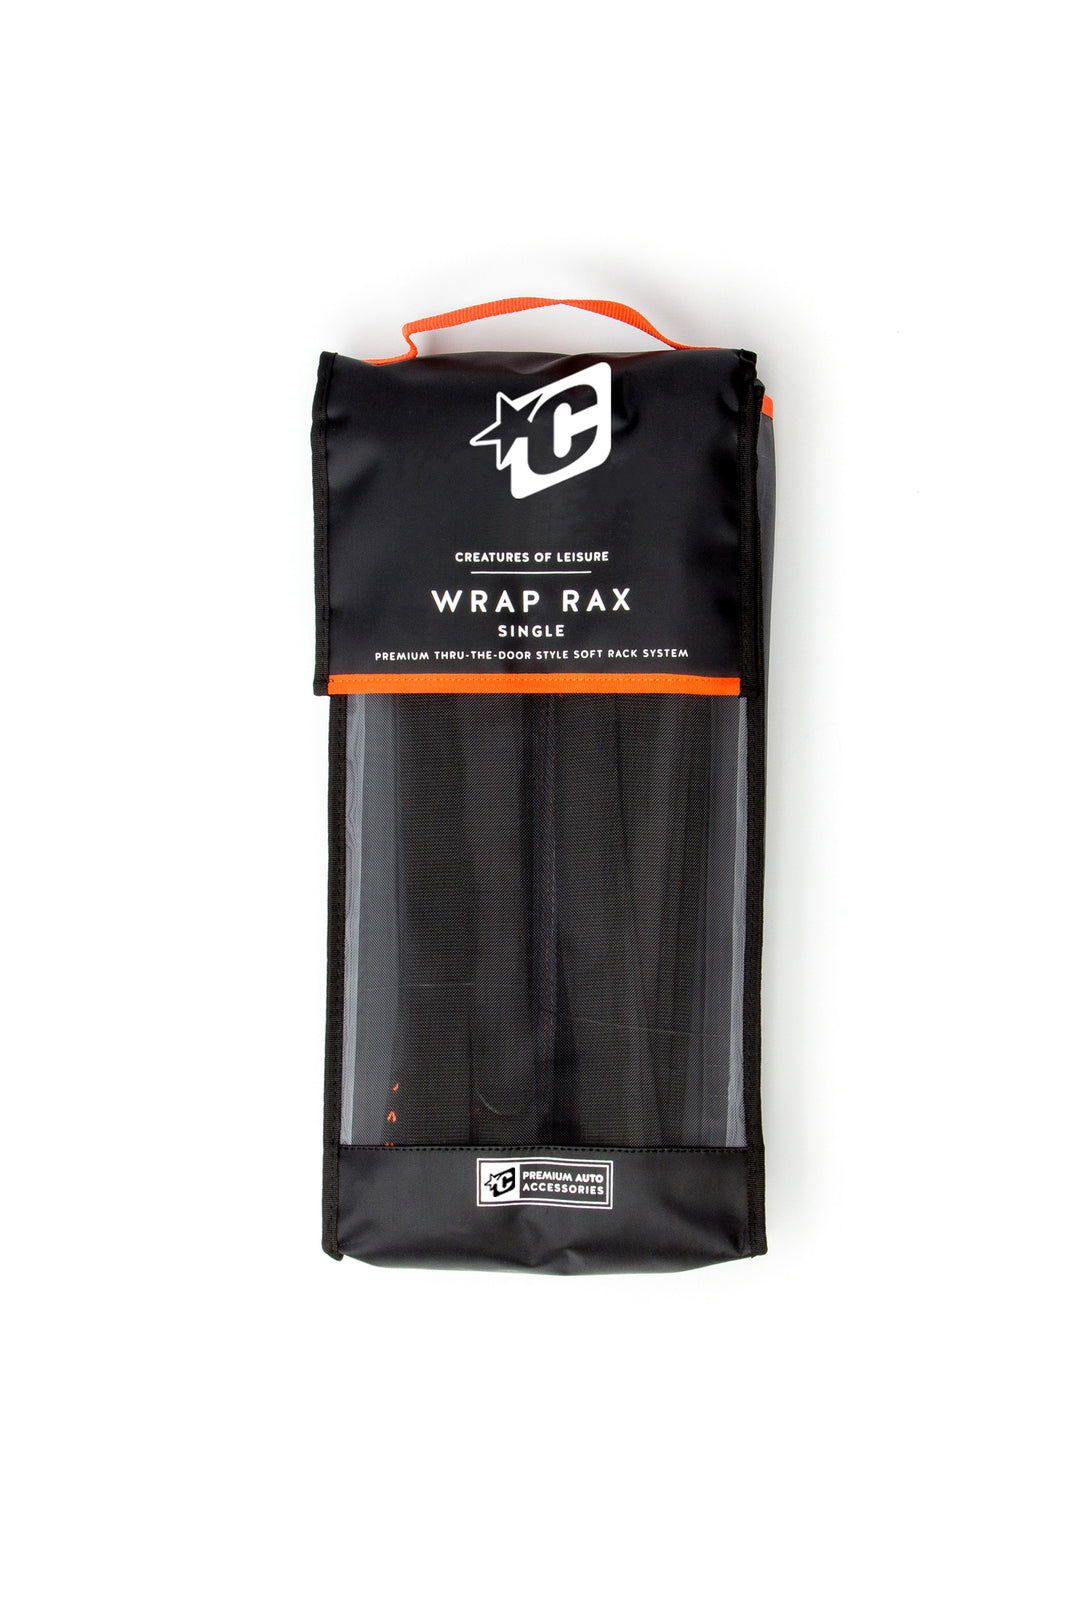 Wrap Wrax